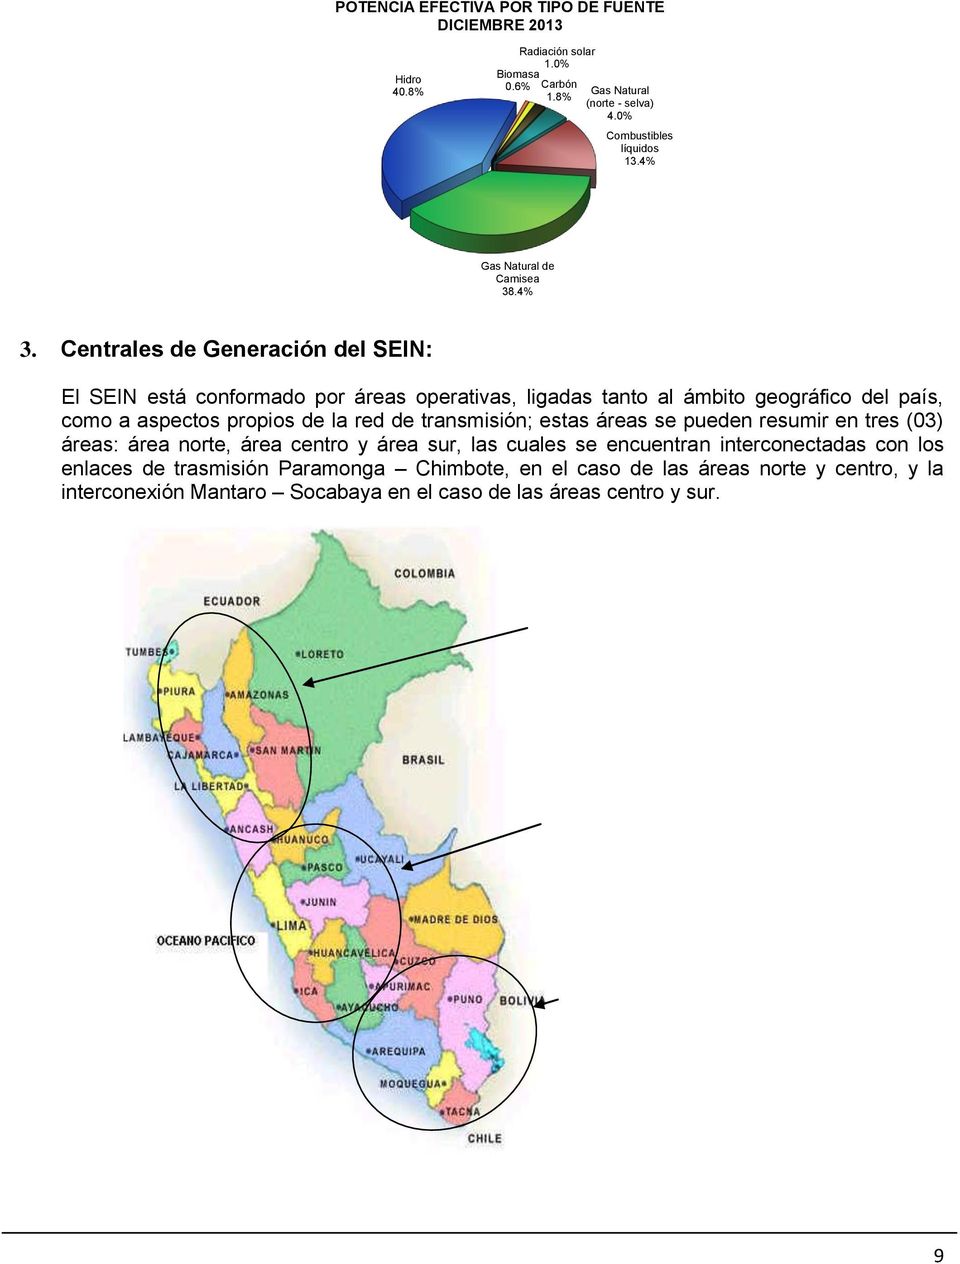 Centrales de Generación del SEIN: El SEIN está conformado por áreas operativas, ligadas tanto al ámbito geográfico del país, como a aspectos propios de la red de